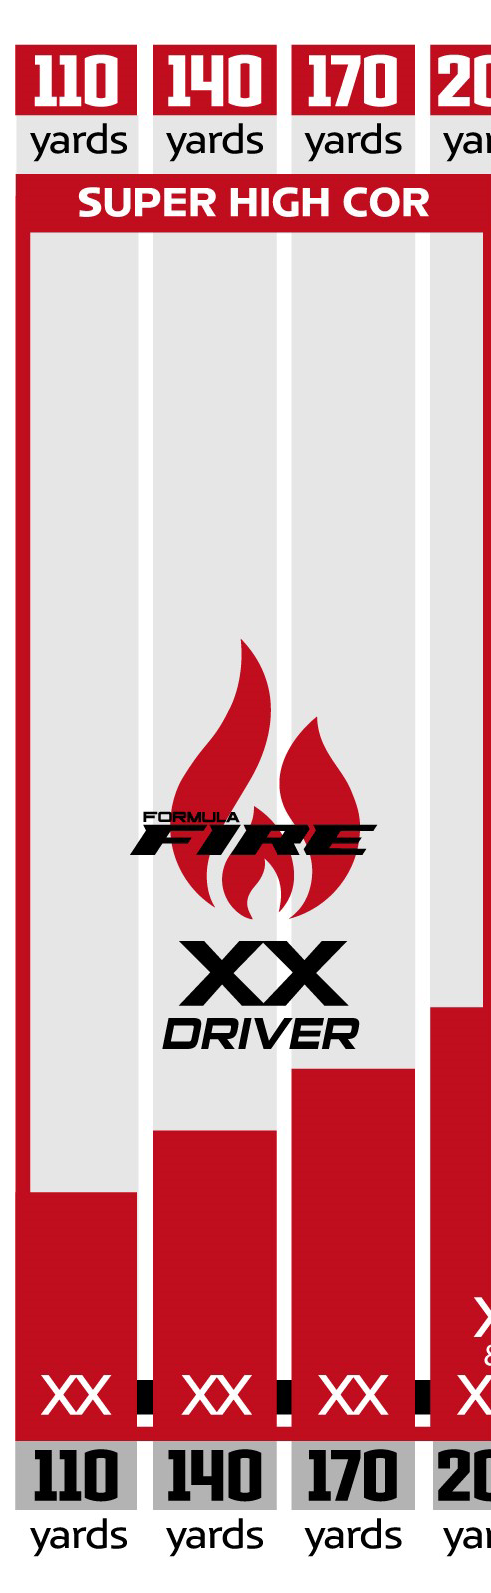 Krank Golf Formula XX Super High-Cor Driver swing speed chart